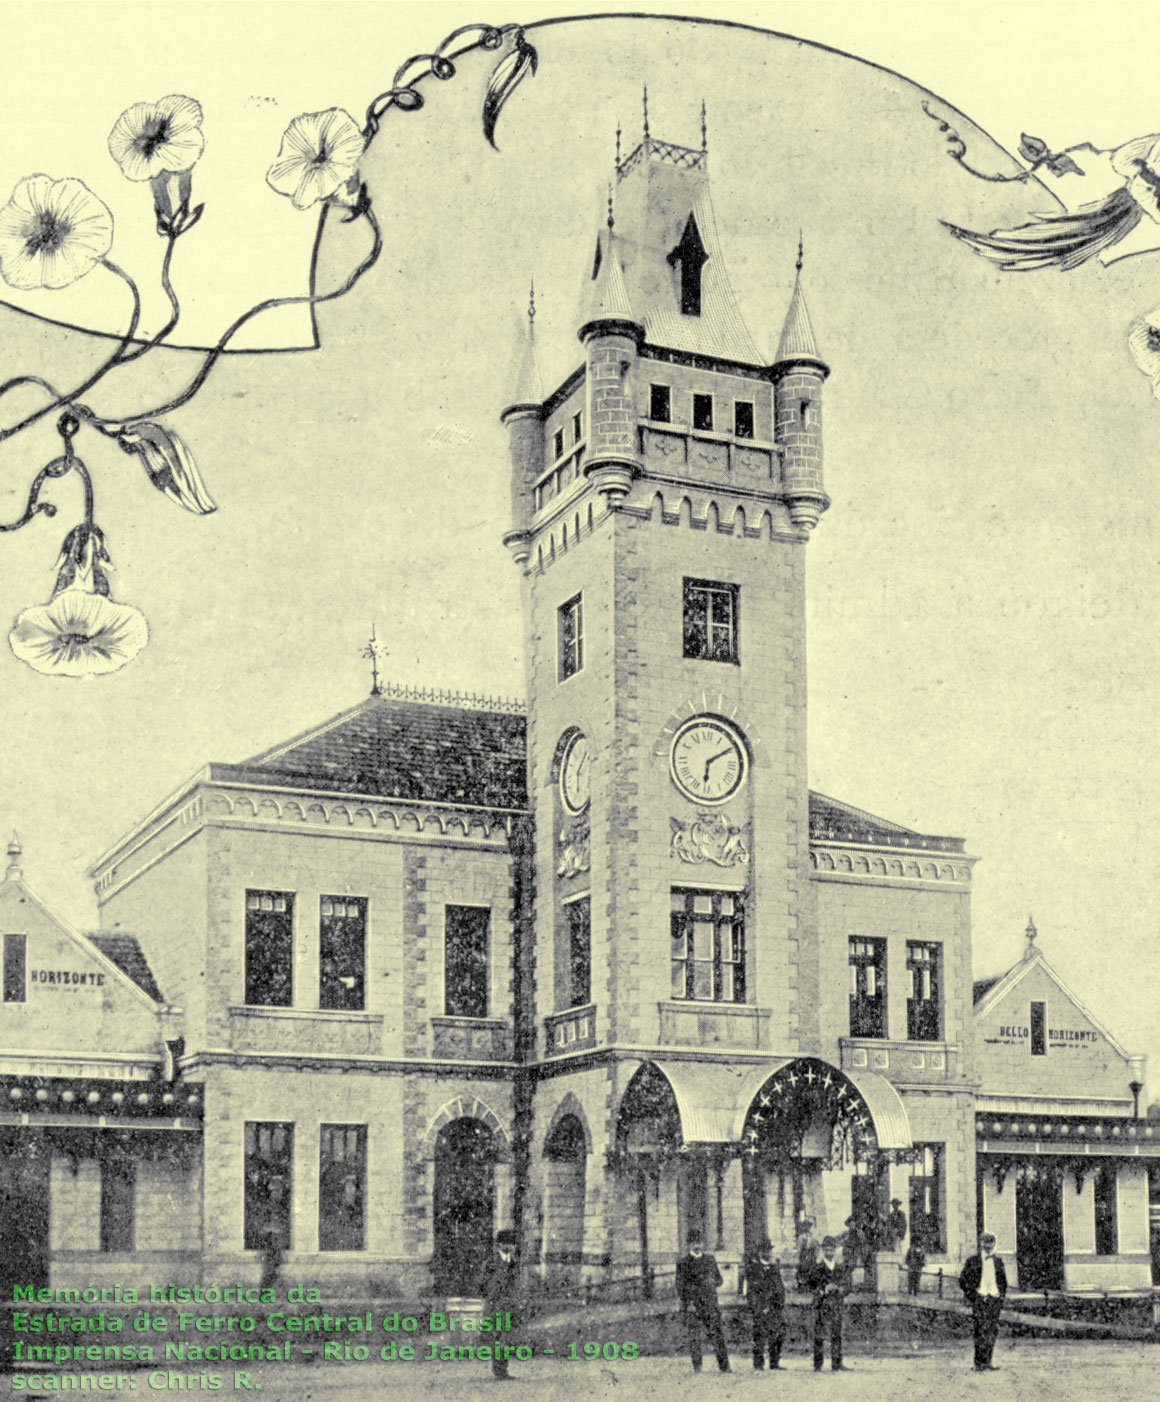 Detalhe ampliado da fachada principal da primeira estação ferroviária de Belo Horizonte